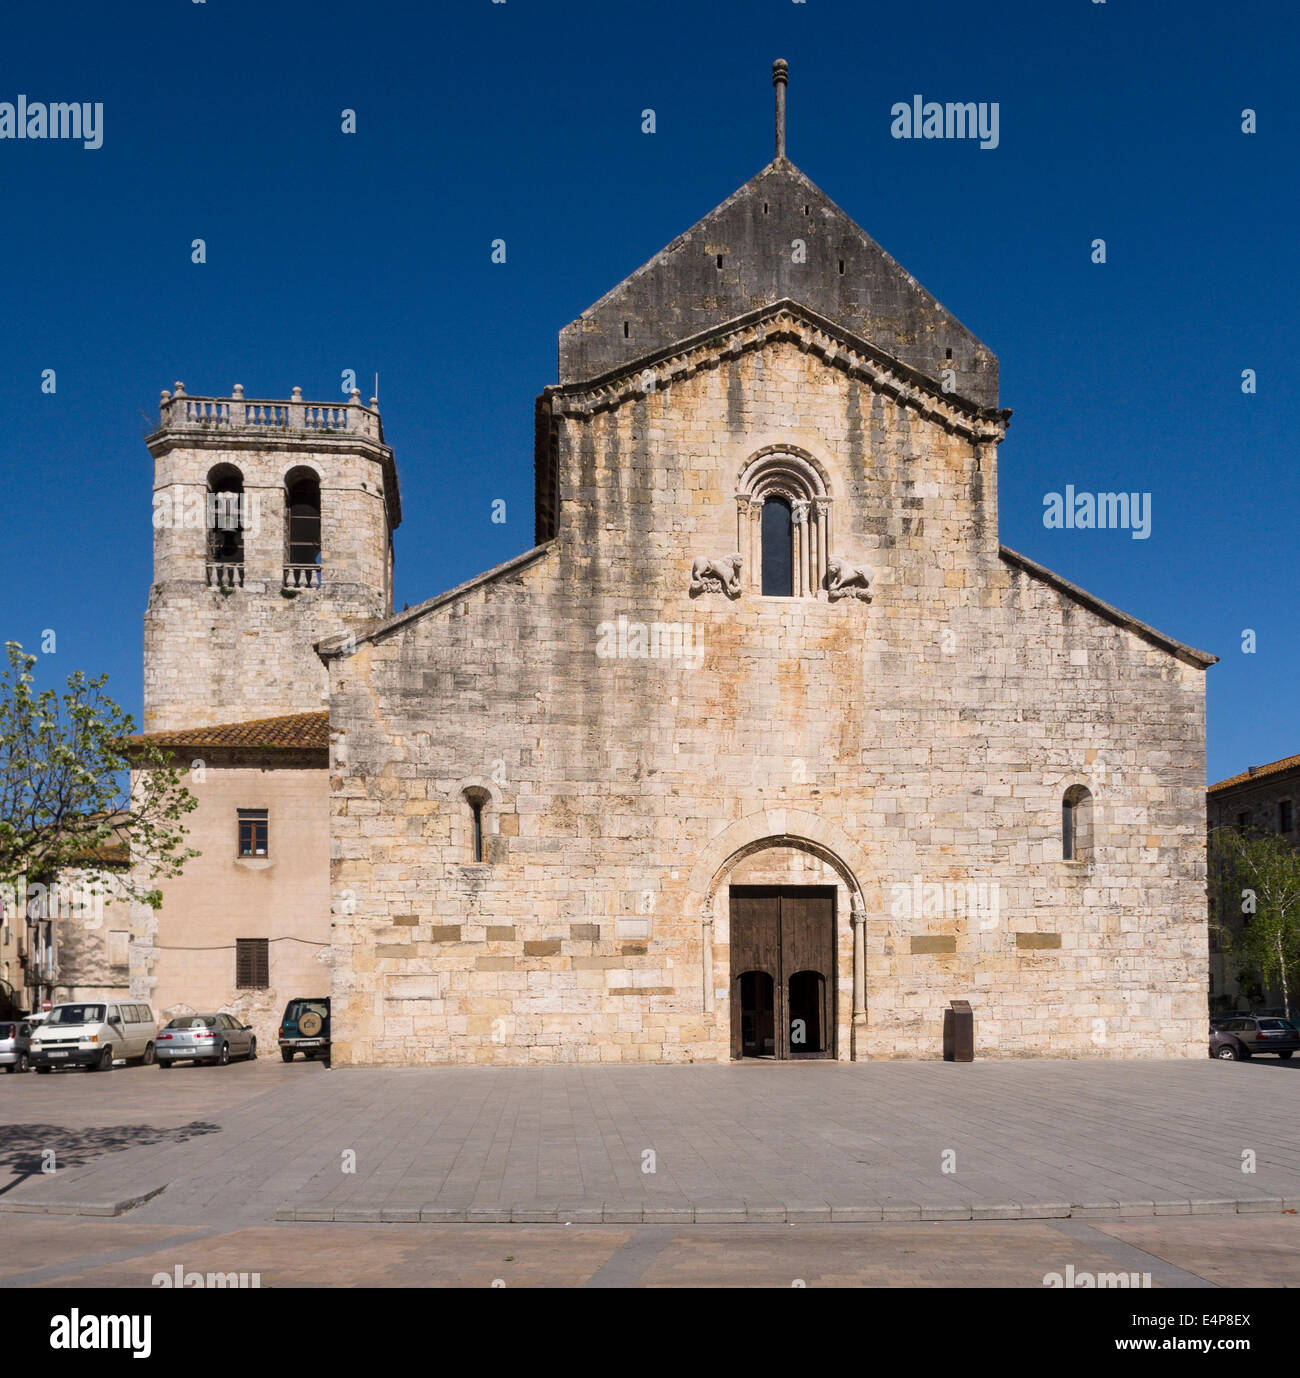 Monester de Sant Pere facciata anteriore. Questa chiesa romanica definisce la piazza principale del piccolo villaggio di Besalu. Foto Stock